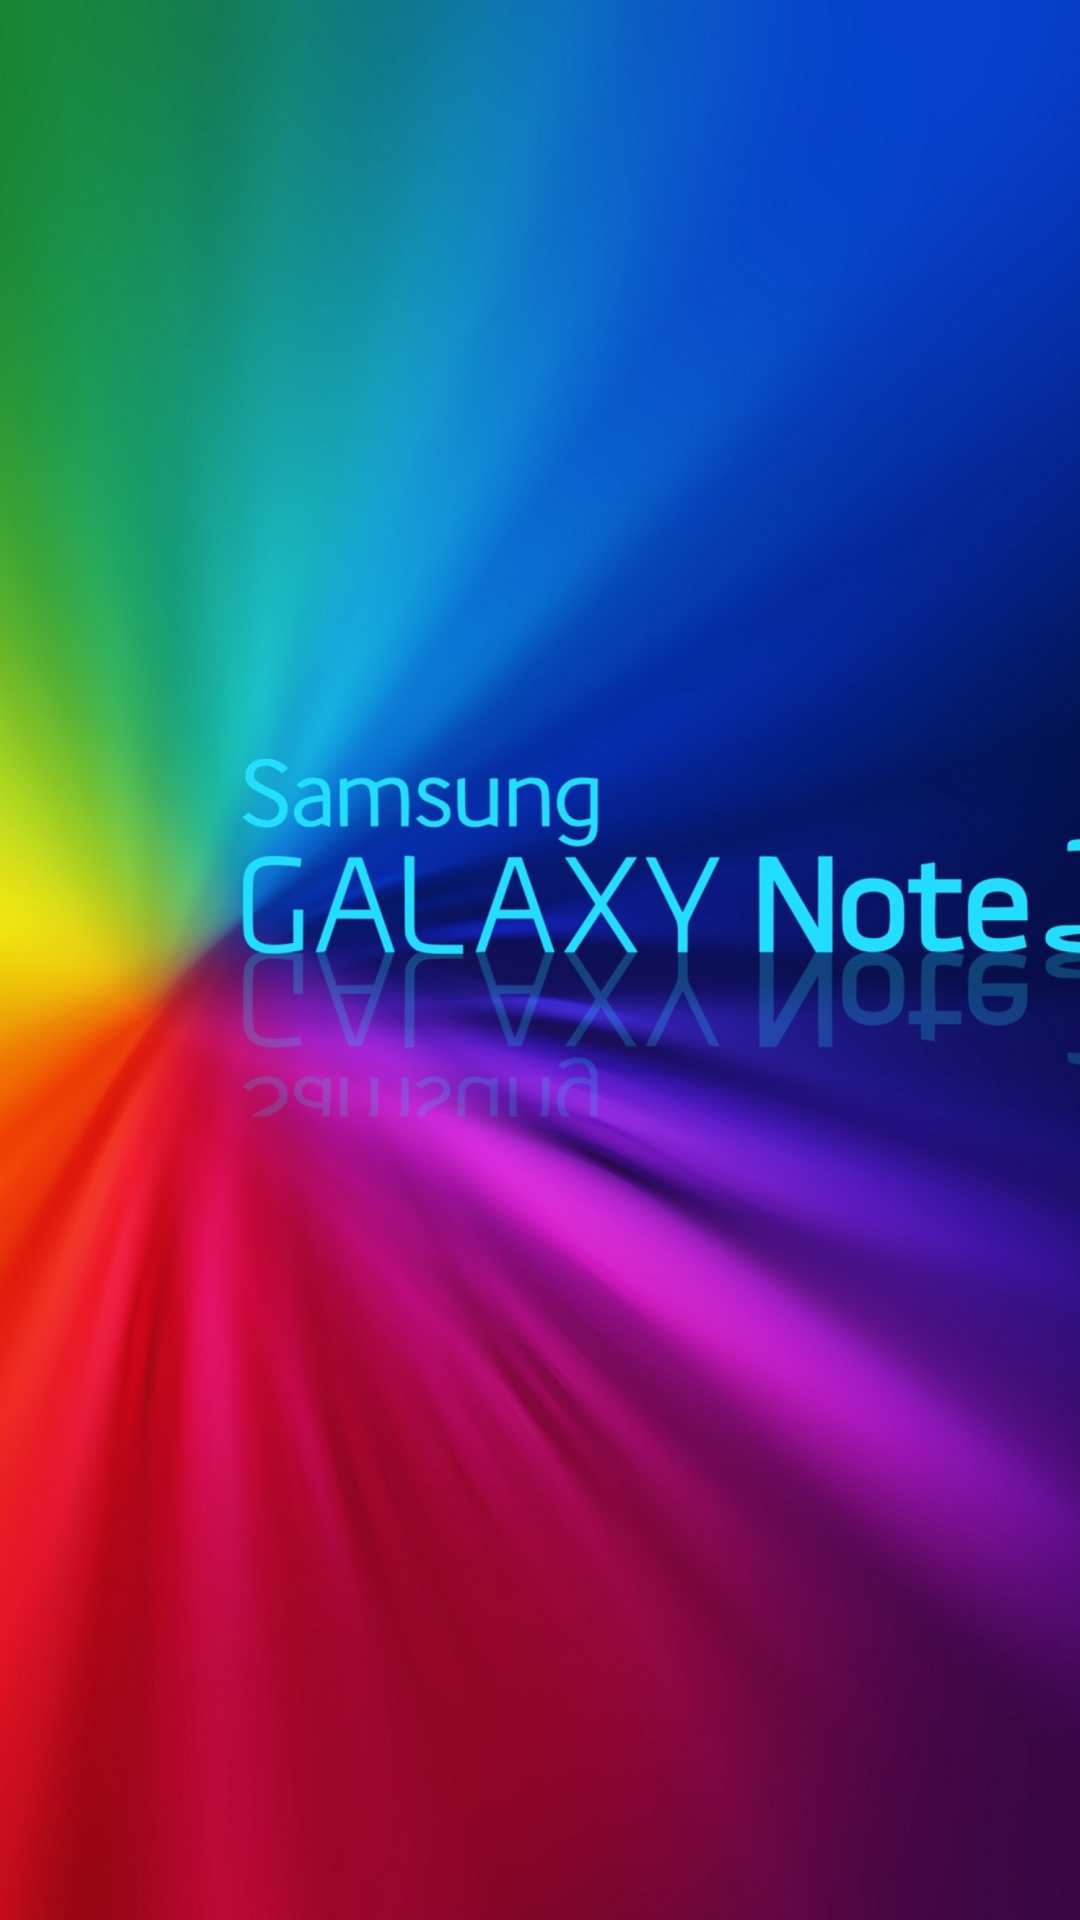 Samsung galaxy note3, galaxy note 3, modern background, samsung, HD phone  wallpaper | Peakpx